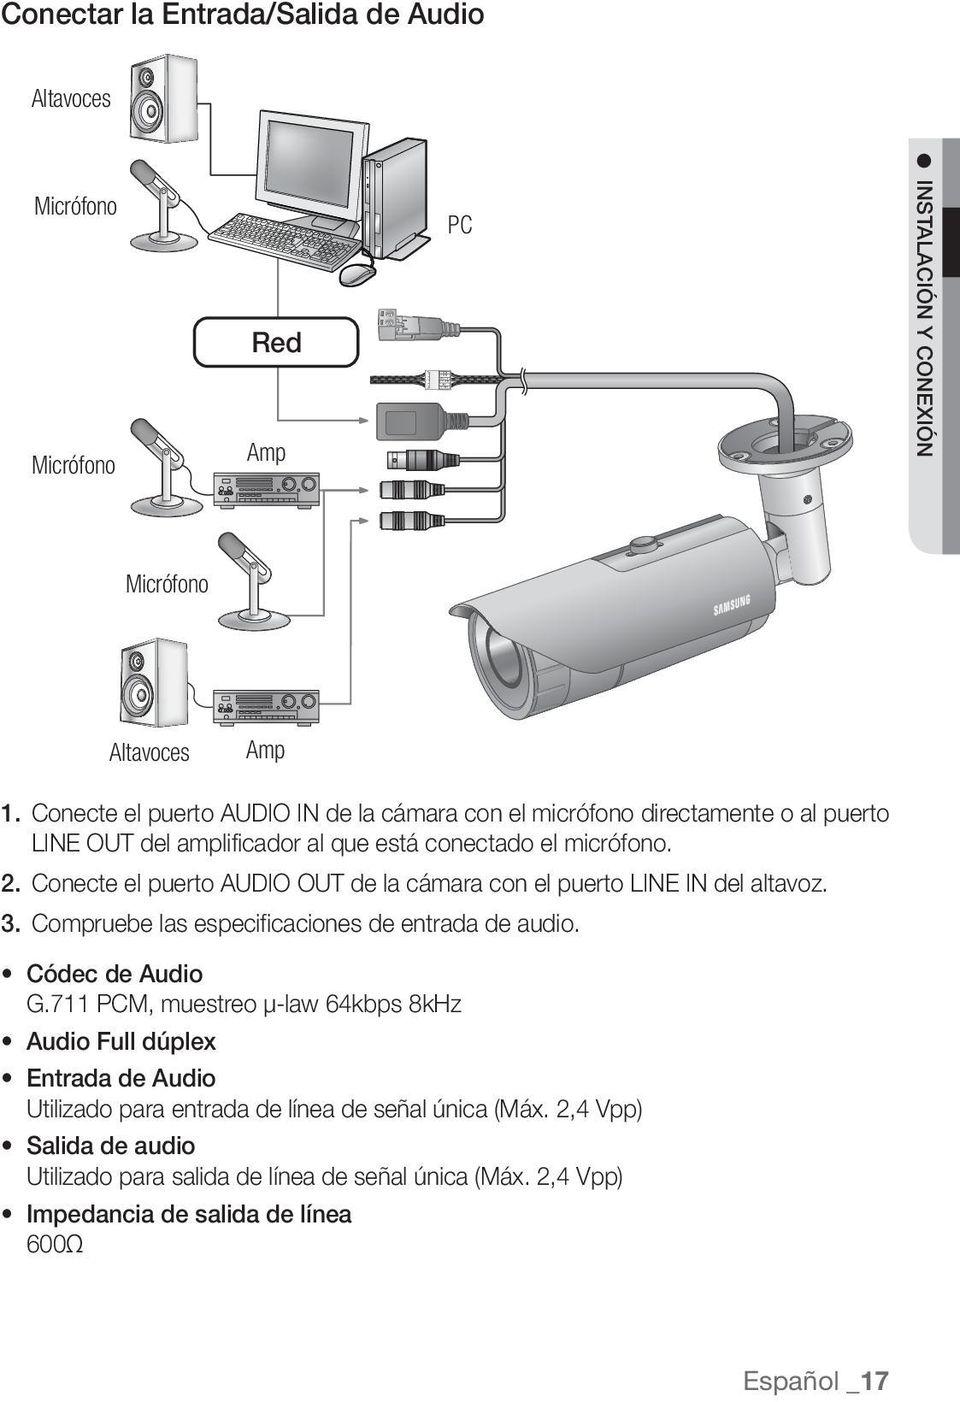 Conecte el puerto AUDIO OUT de la cámara con el puerto LINE IN del altavoz. 3. Compruebe las especificaciones de entrada de audio. Códec de Audio G.